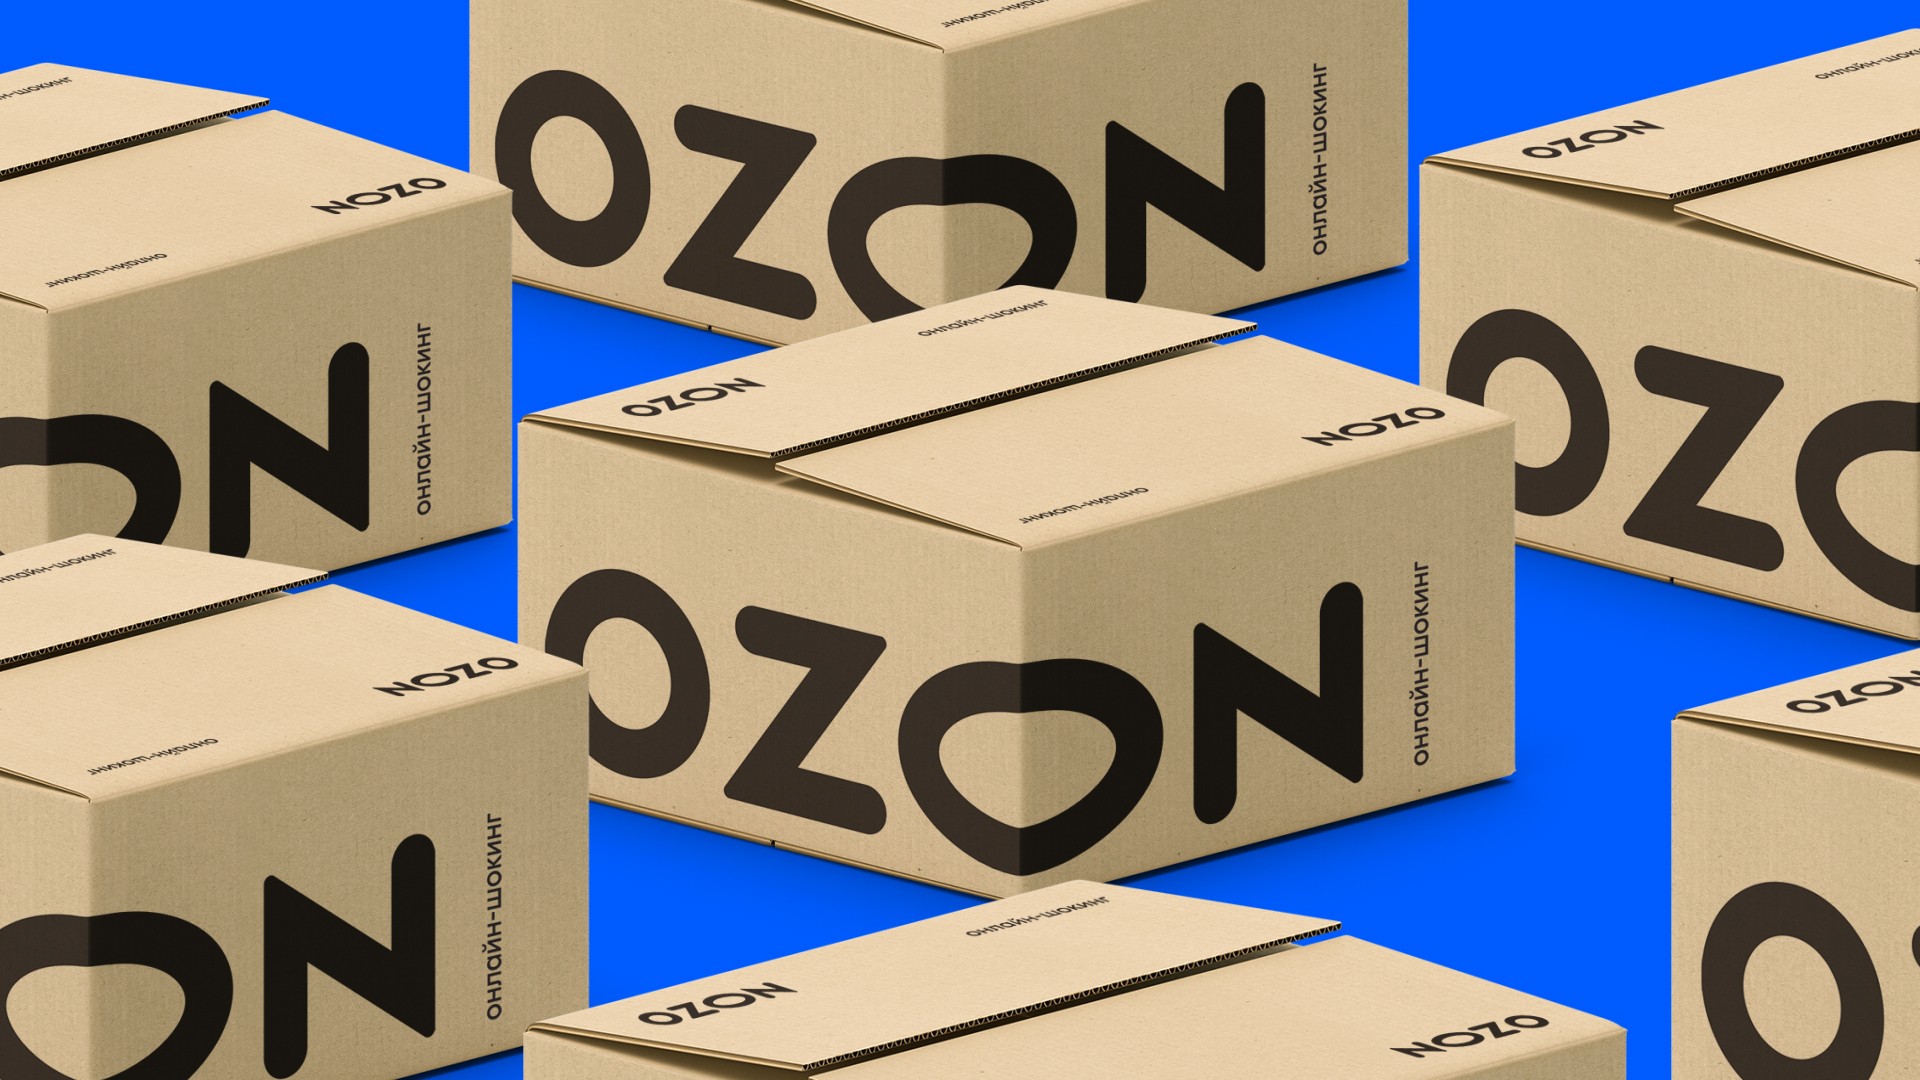 Заработок на Озон, бизнес на Озон, озон обучение, как заработать на озон